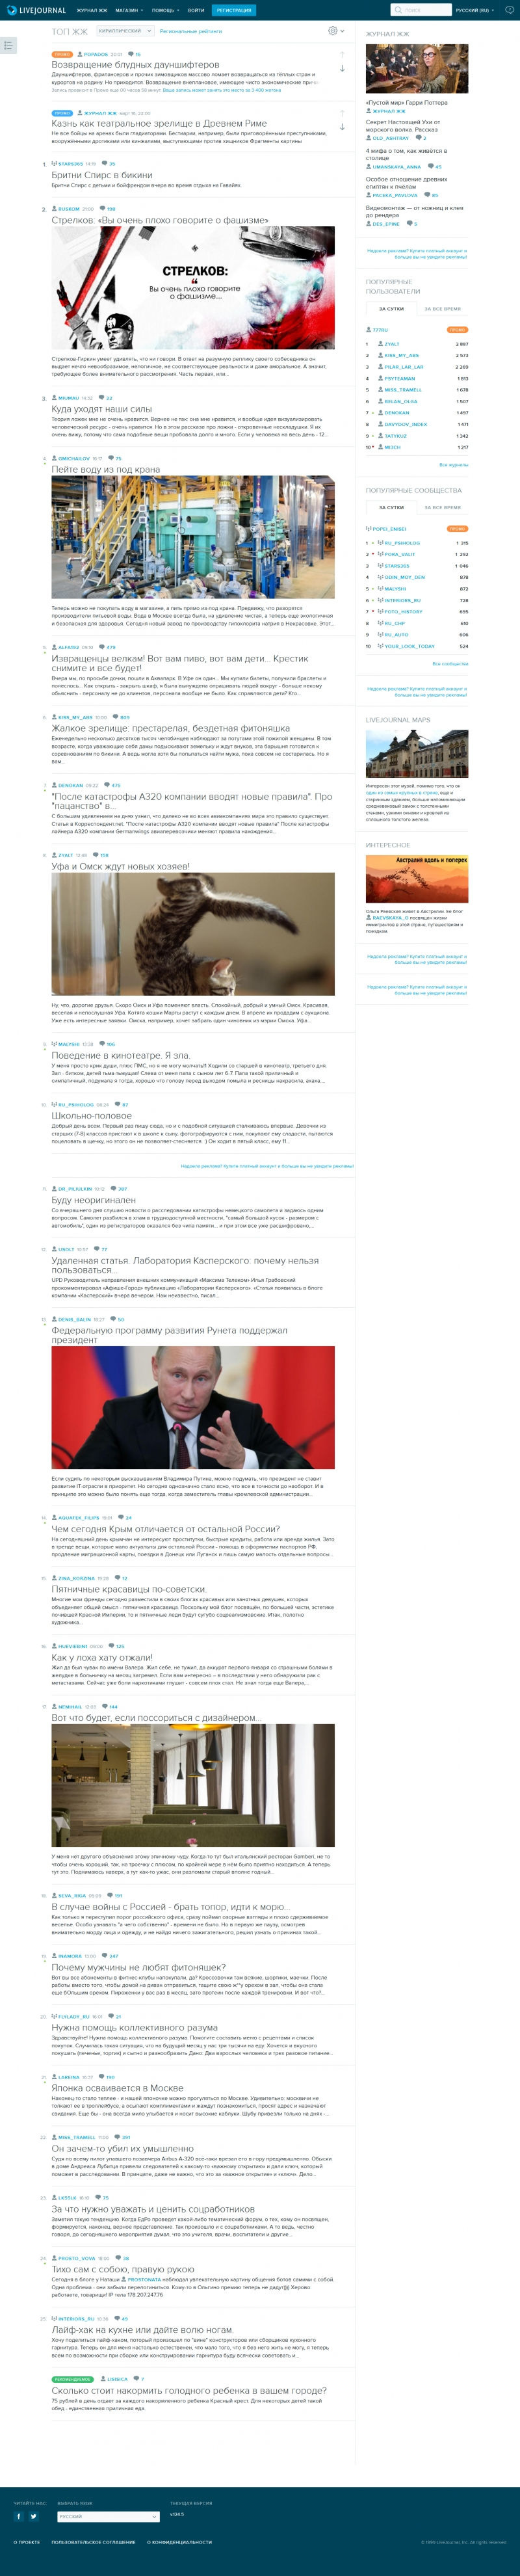 Скриншот сайта «lj.ru» от 27.03.2015 года